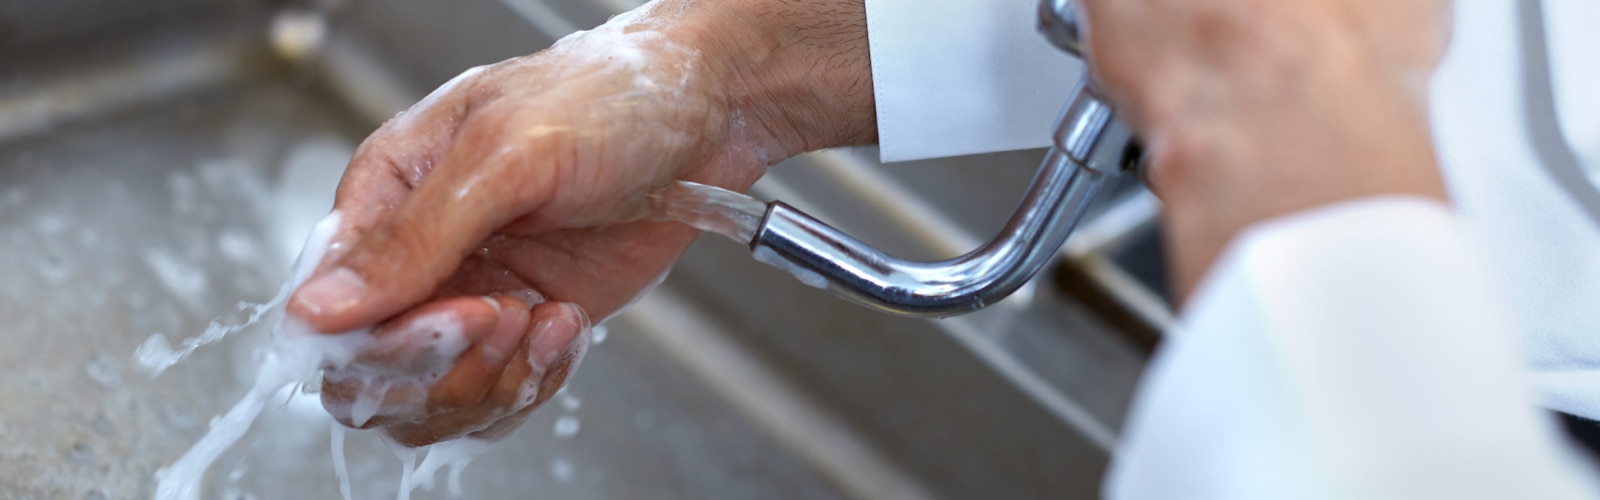 Handen wassen in restaurants en professionele keukens